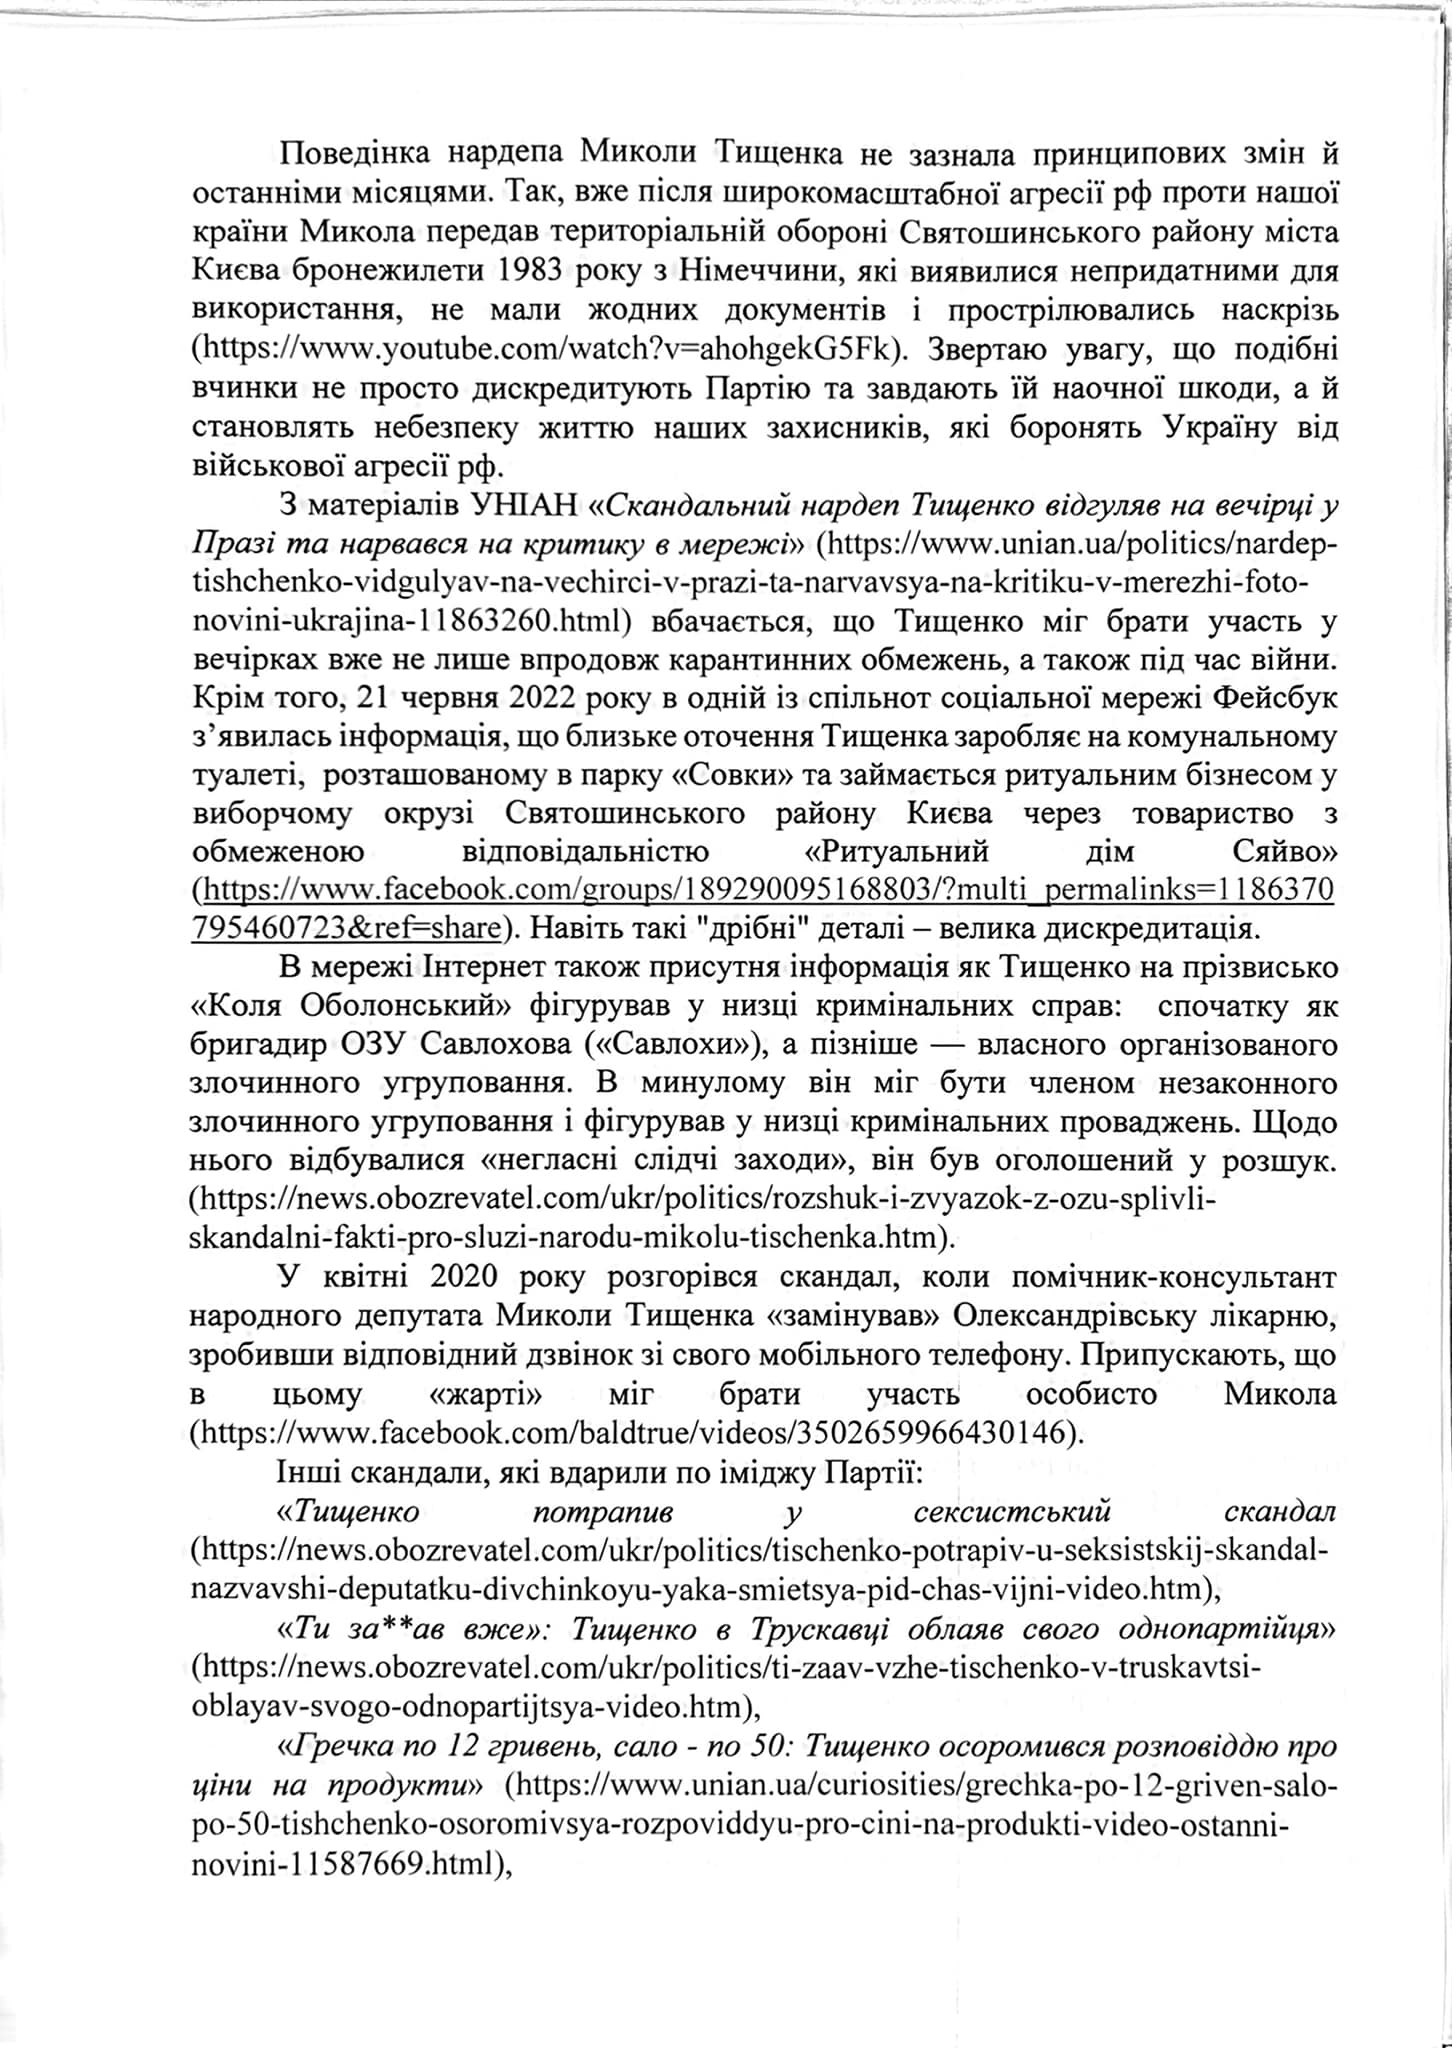 Безуглая написала заявлении Шуляк и Арахамии об исключении Тищенко из Слуги народа